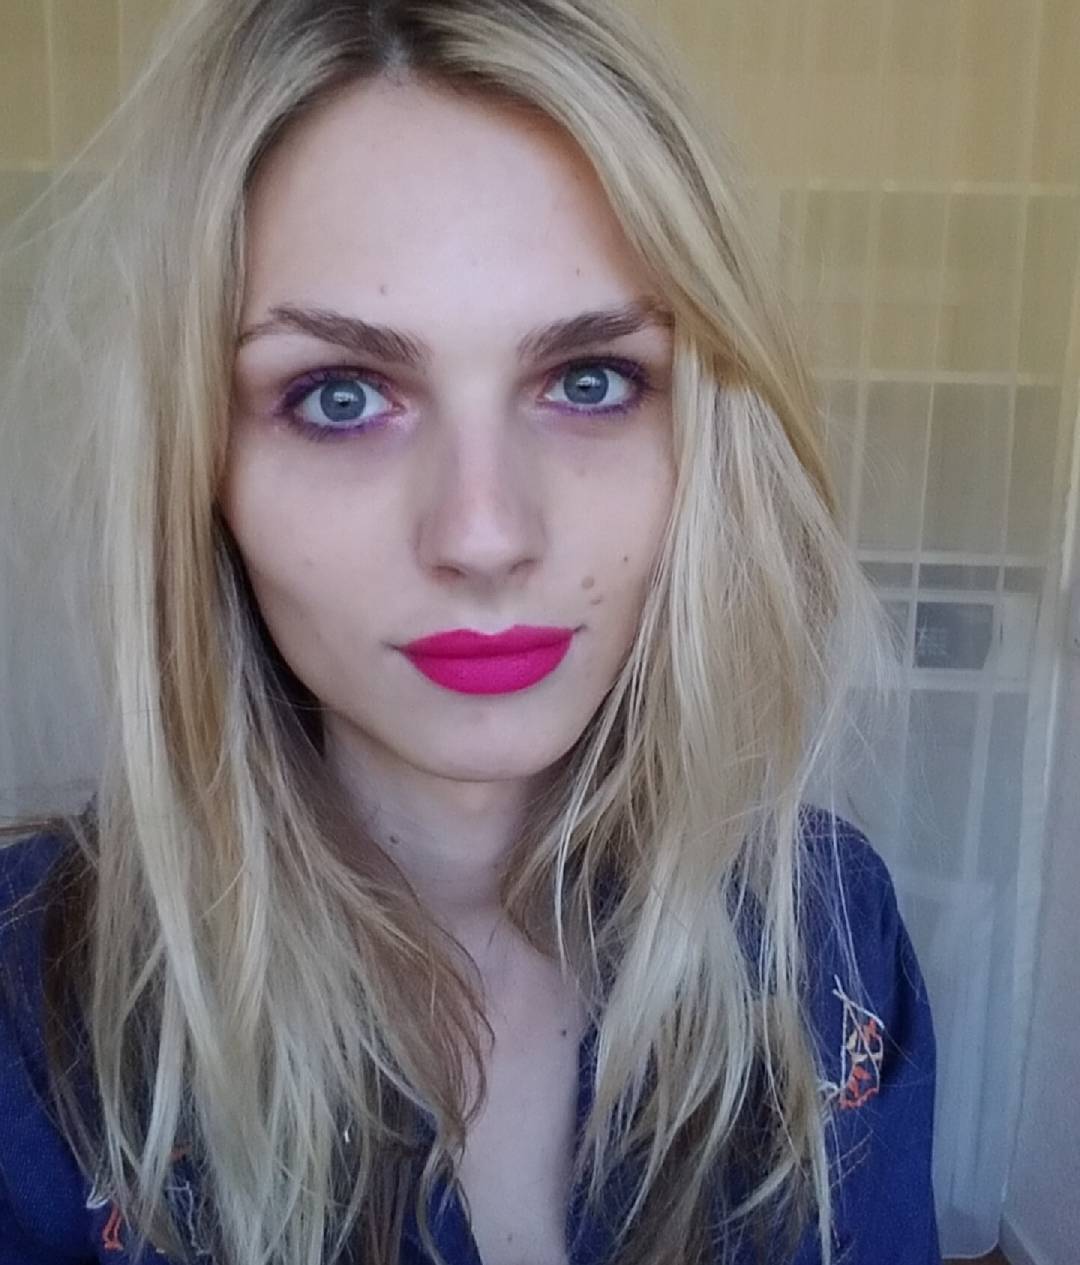 Andreja Pejic – Transgender Beauty Face Instagram